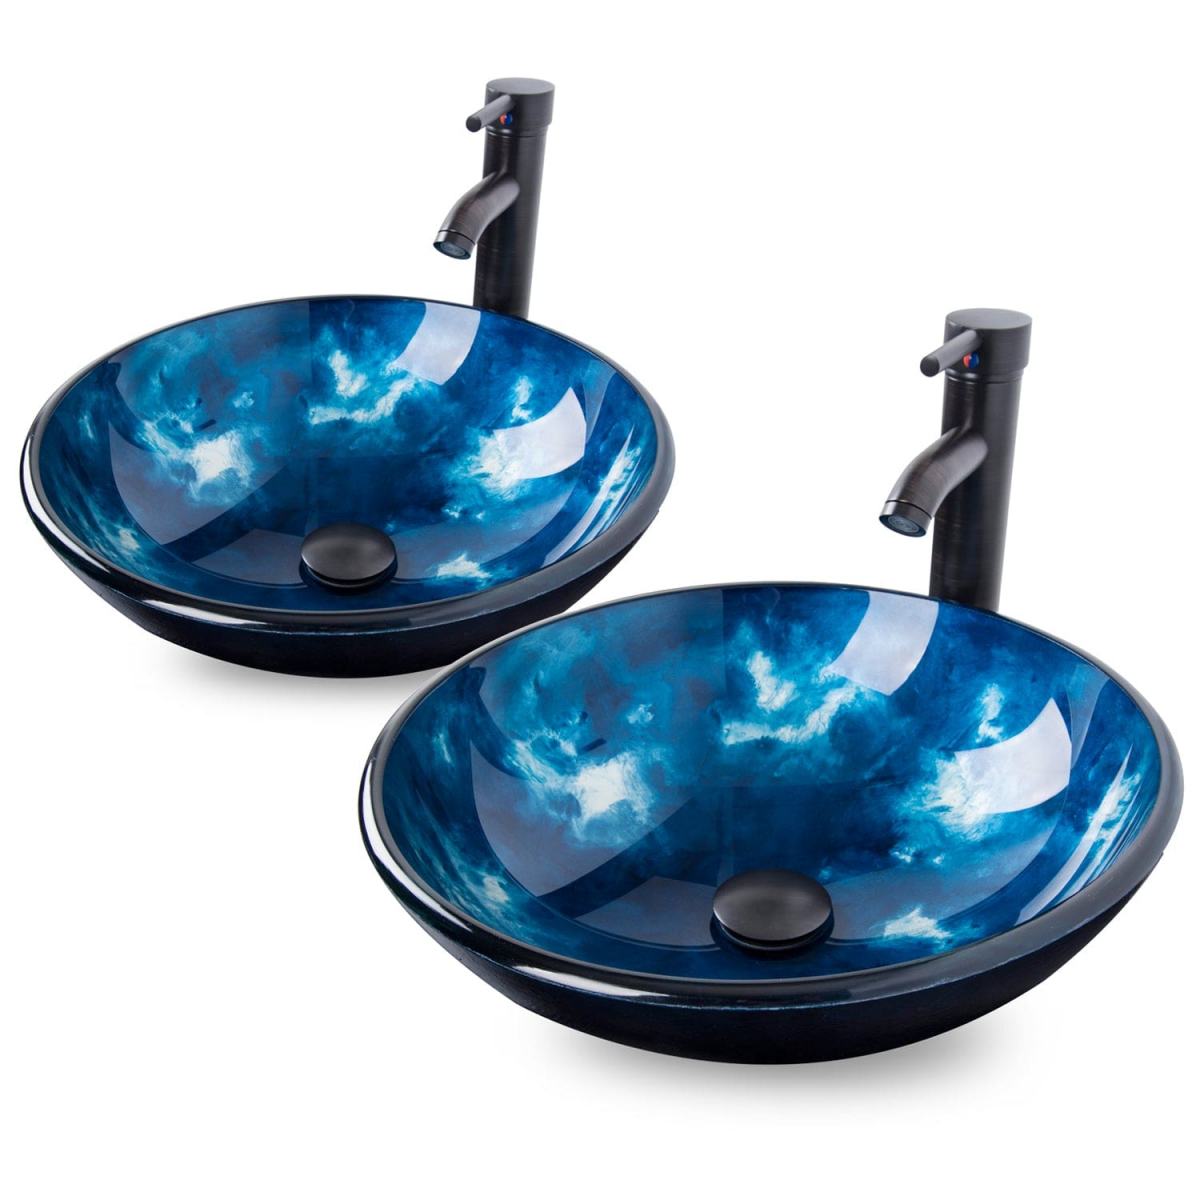 2 Elecwish ocean blue round sinks